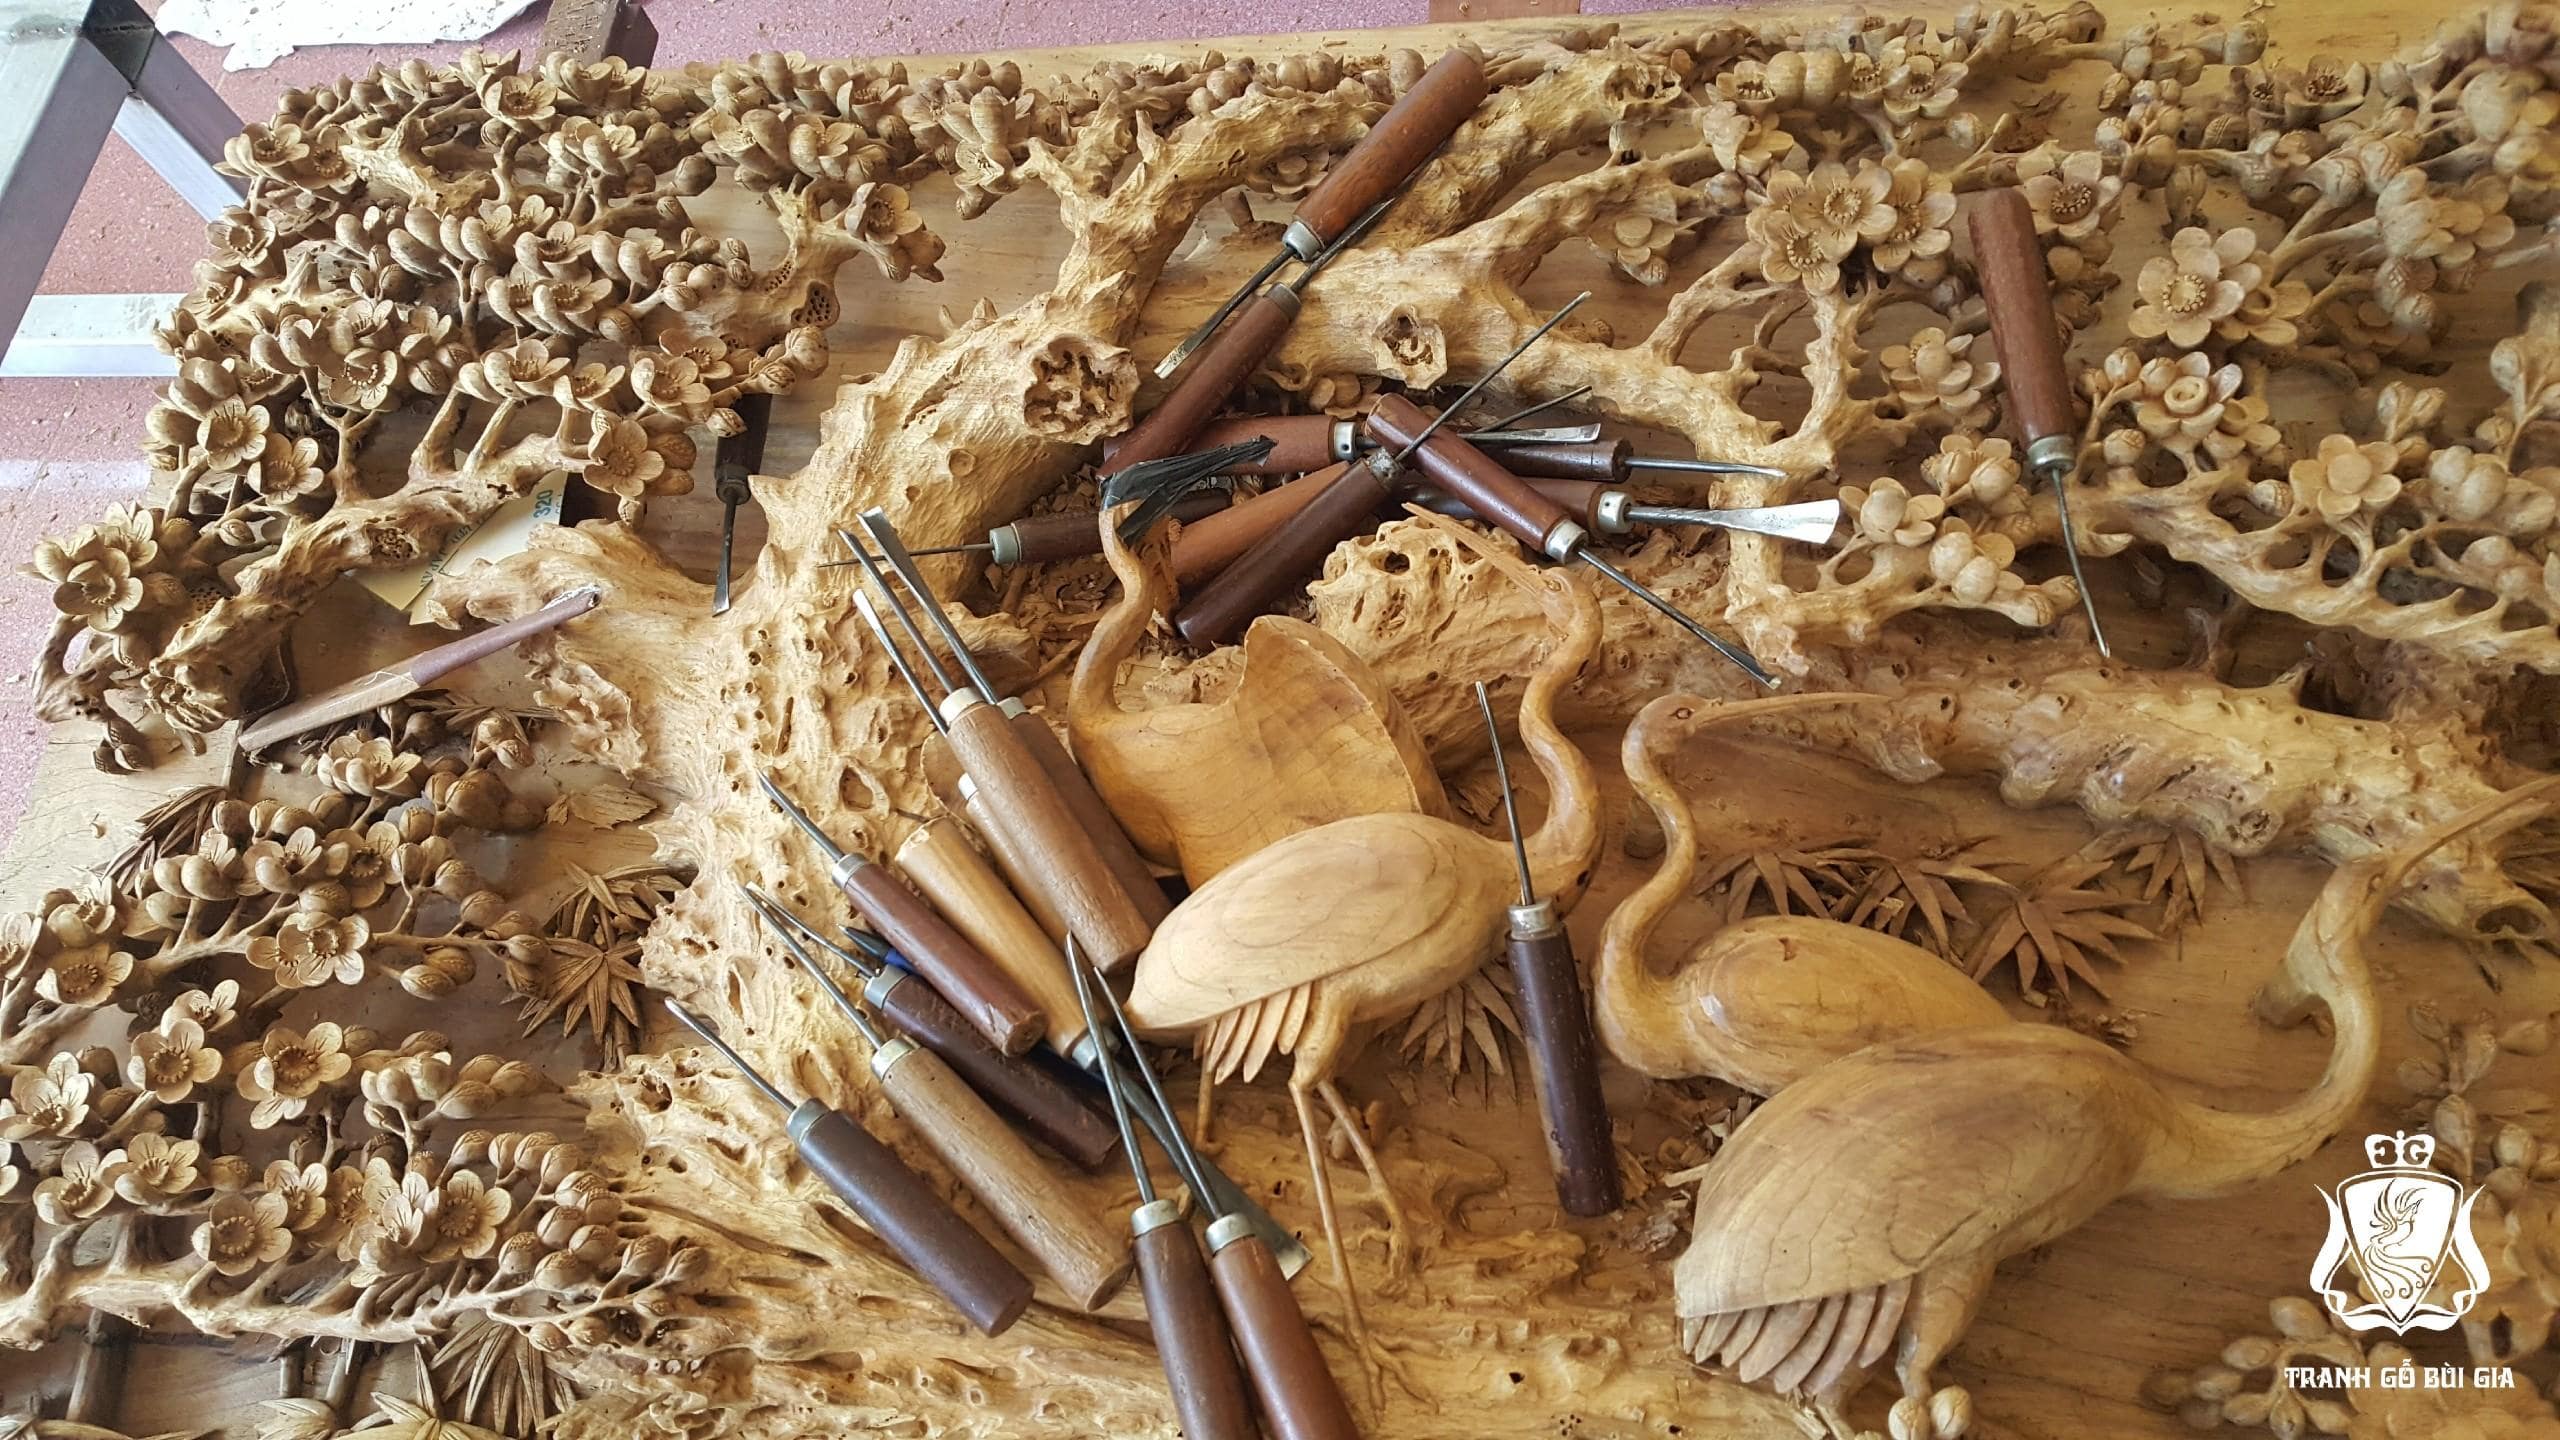 PHI MINH TÚC THỰC - Điển Tích Tranh Cổ Hàng Nghìn Năm Qua - Tranh gỗ Bùi Gia